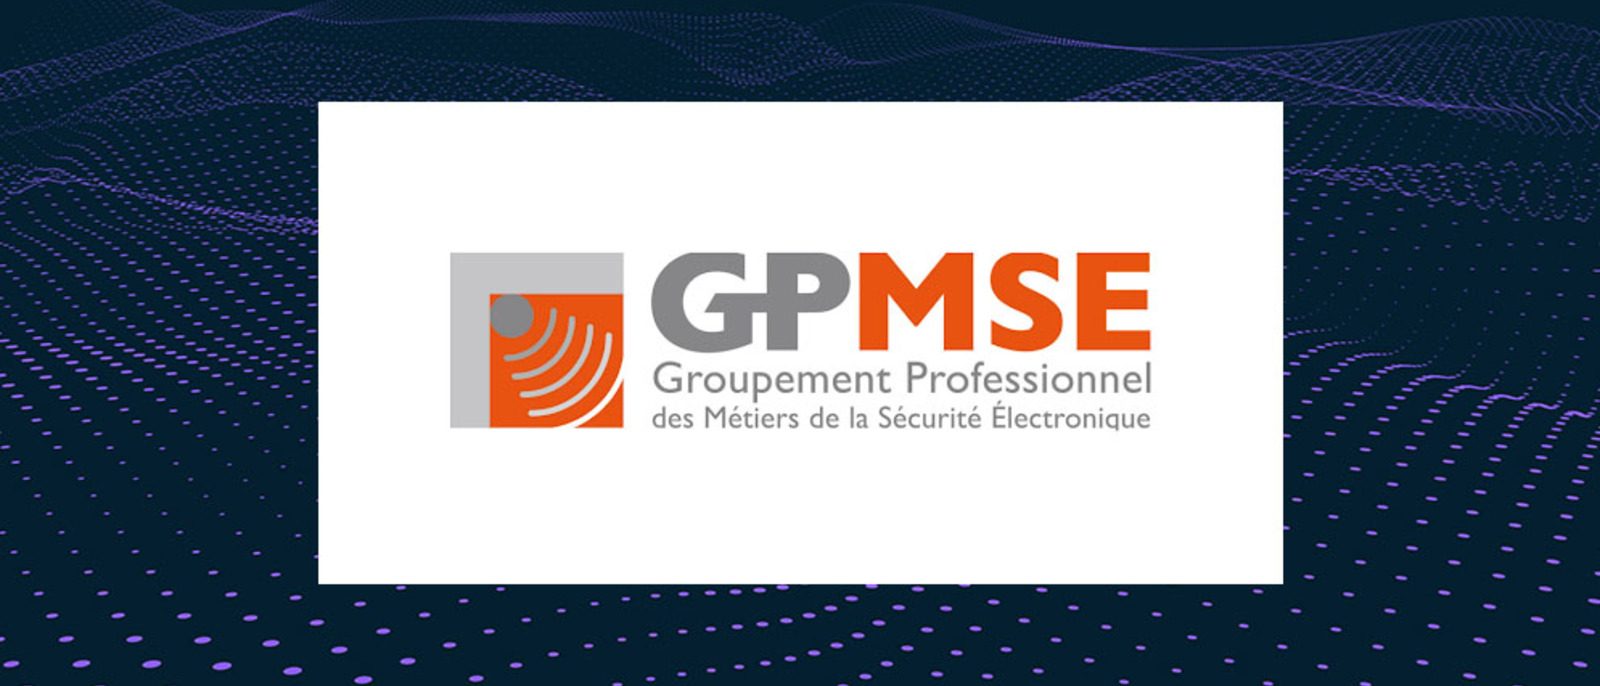 Le Groupement professionnel des métiers de la sécurité électronique (GPMSE) se réorganise